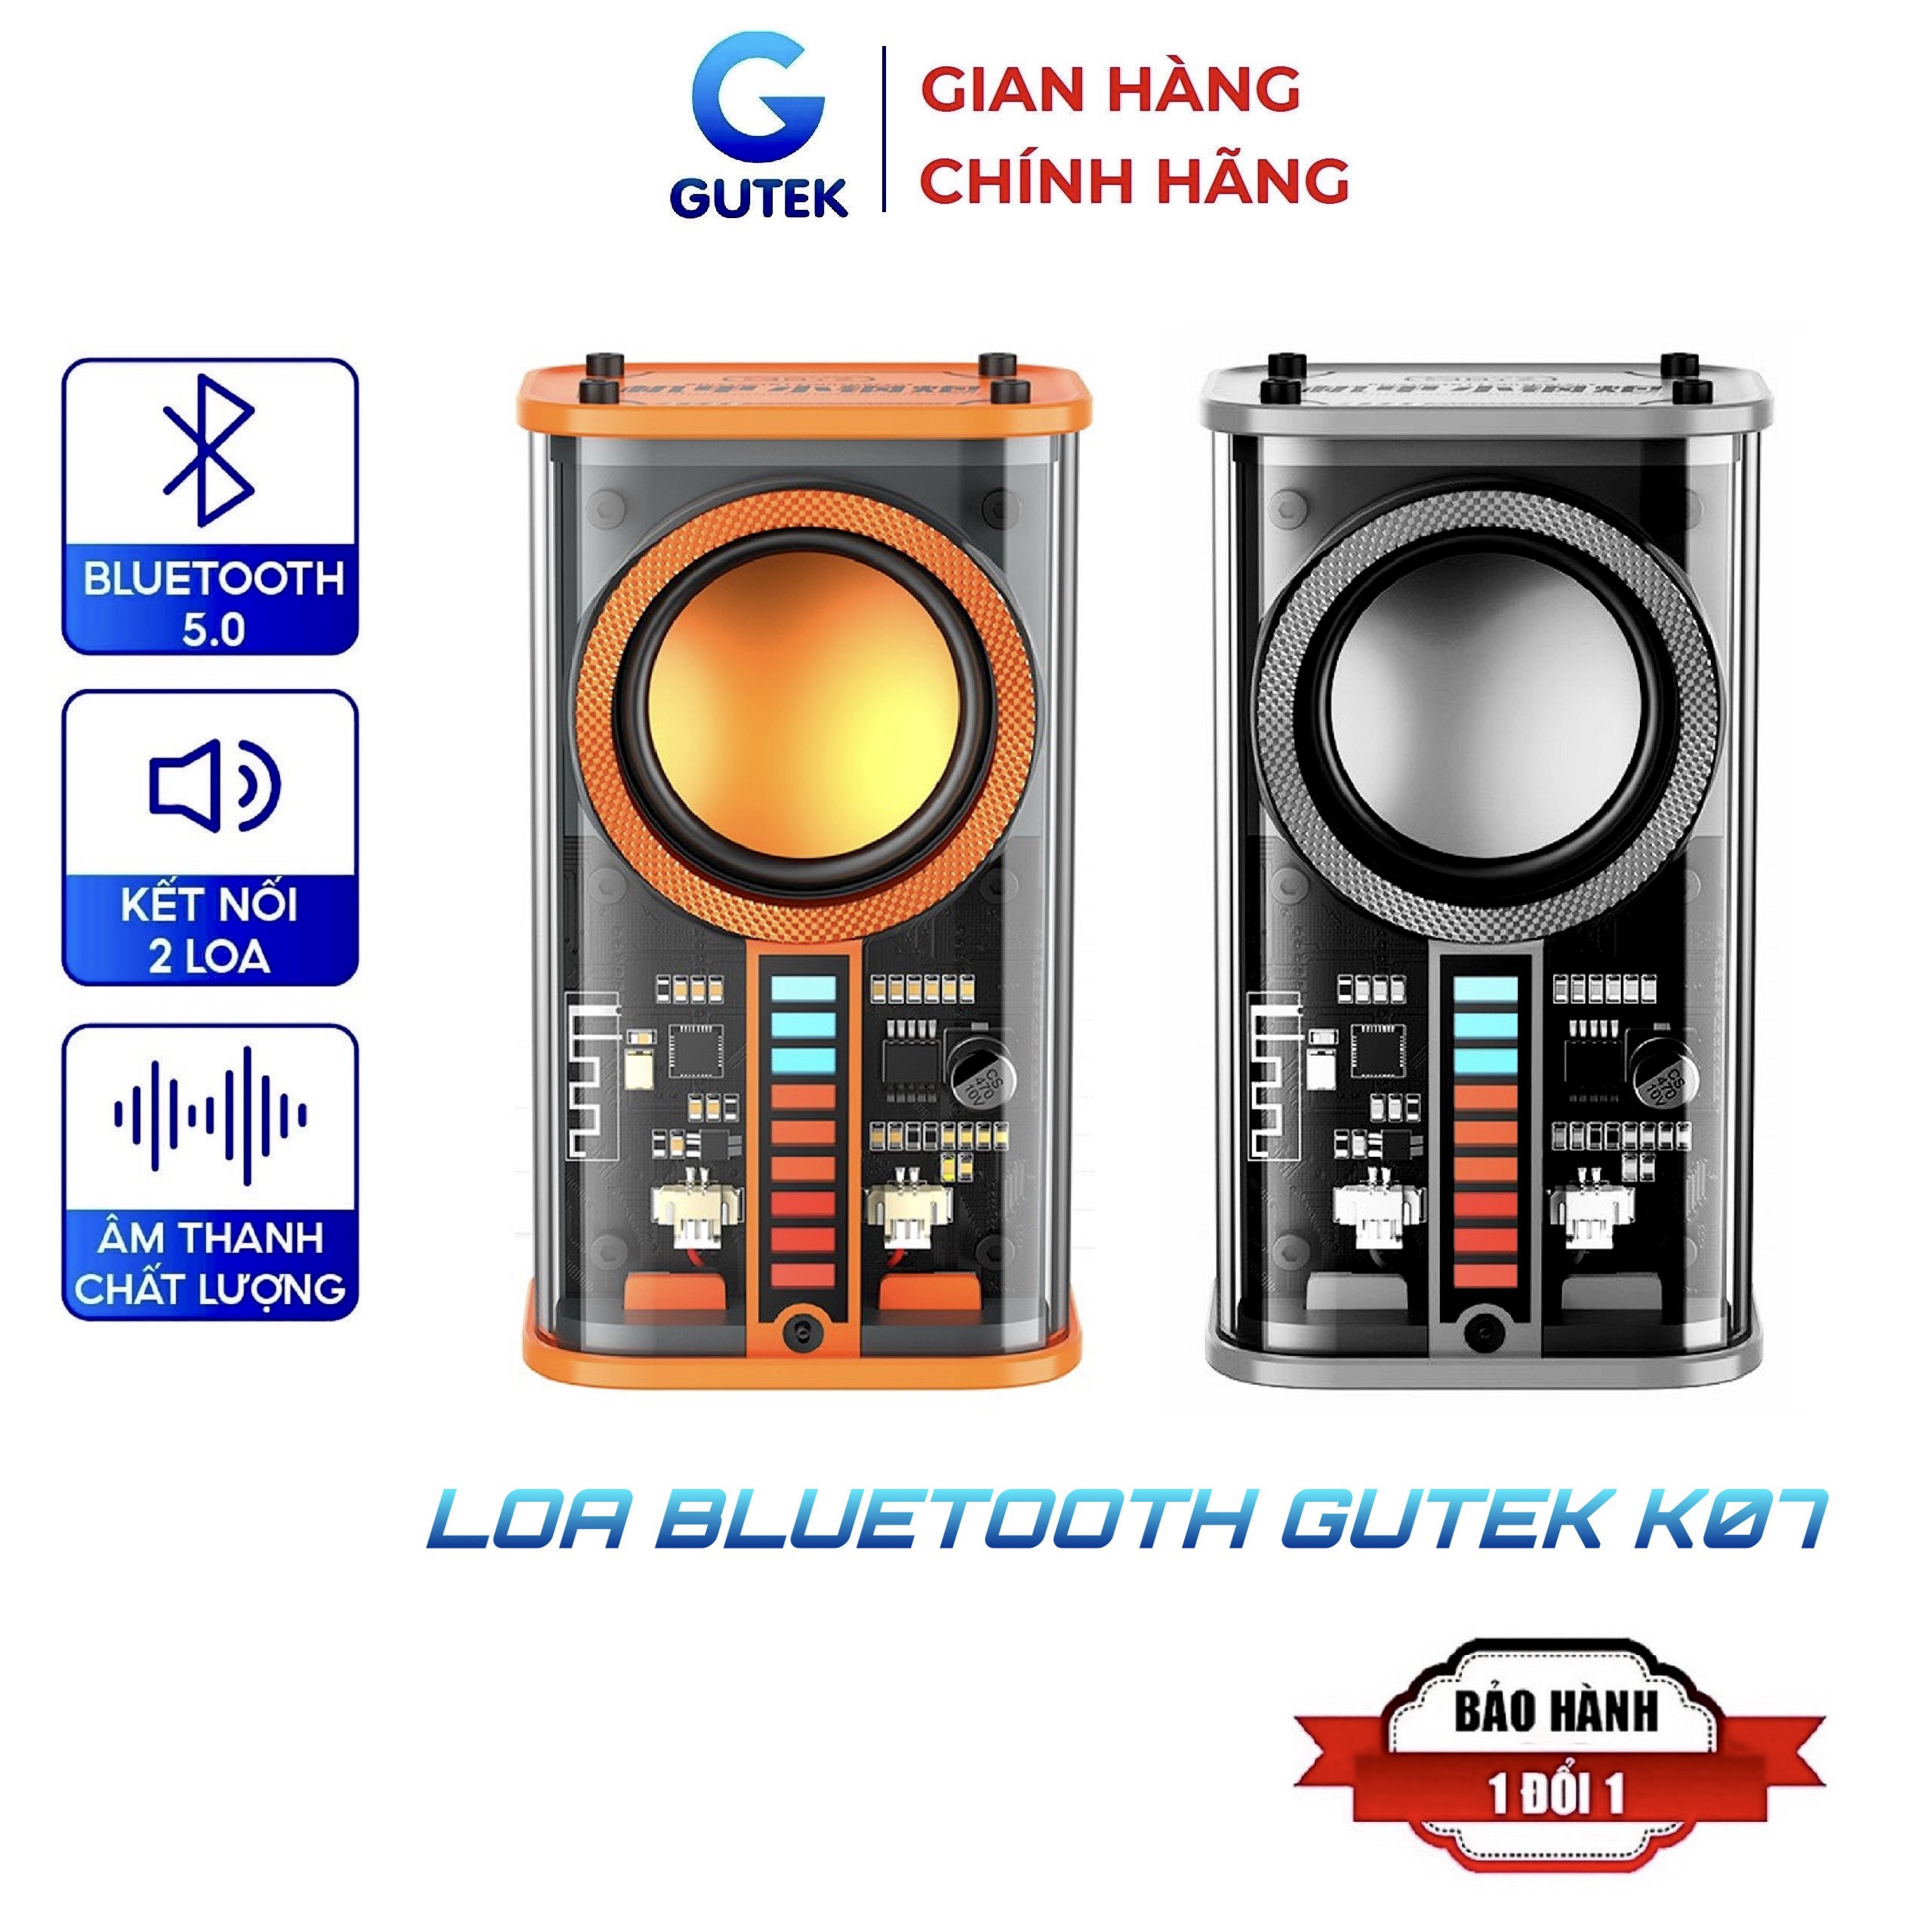 Loa bluetooth mini Gutek K07 nghe nhạc không dây bass rung công suất cao